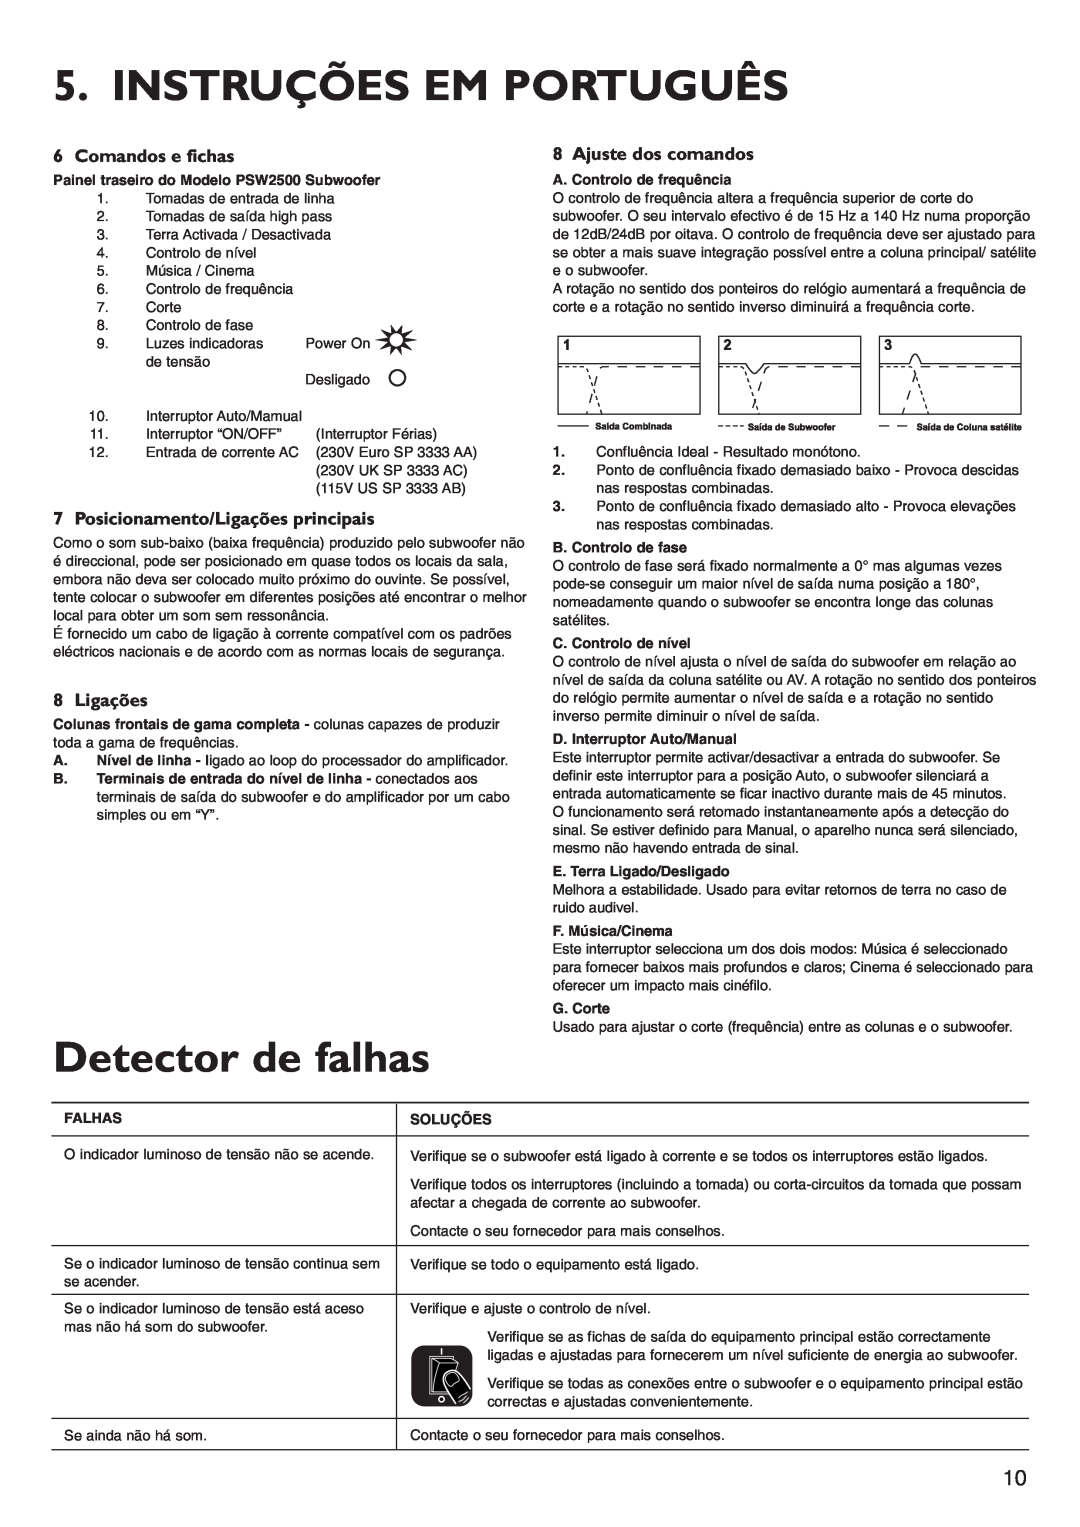 KEF Audio PSW2500 Instruções Em Português, Detector de falhas, Comandos e fichas, Posicionamento/Ligações principais 